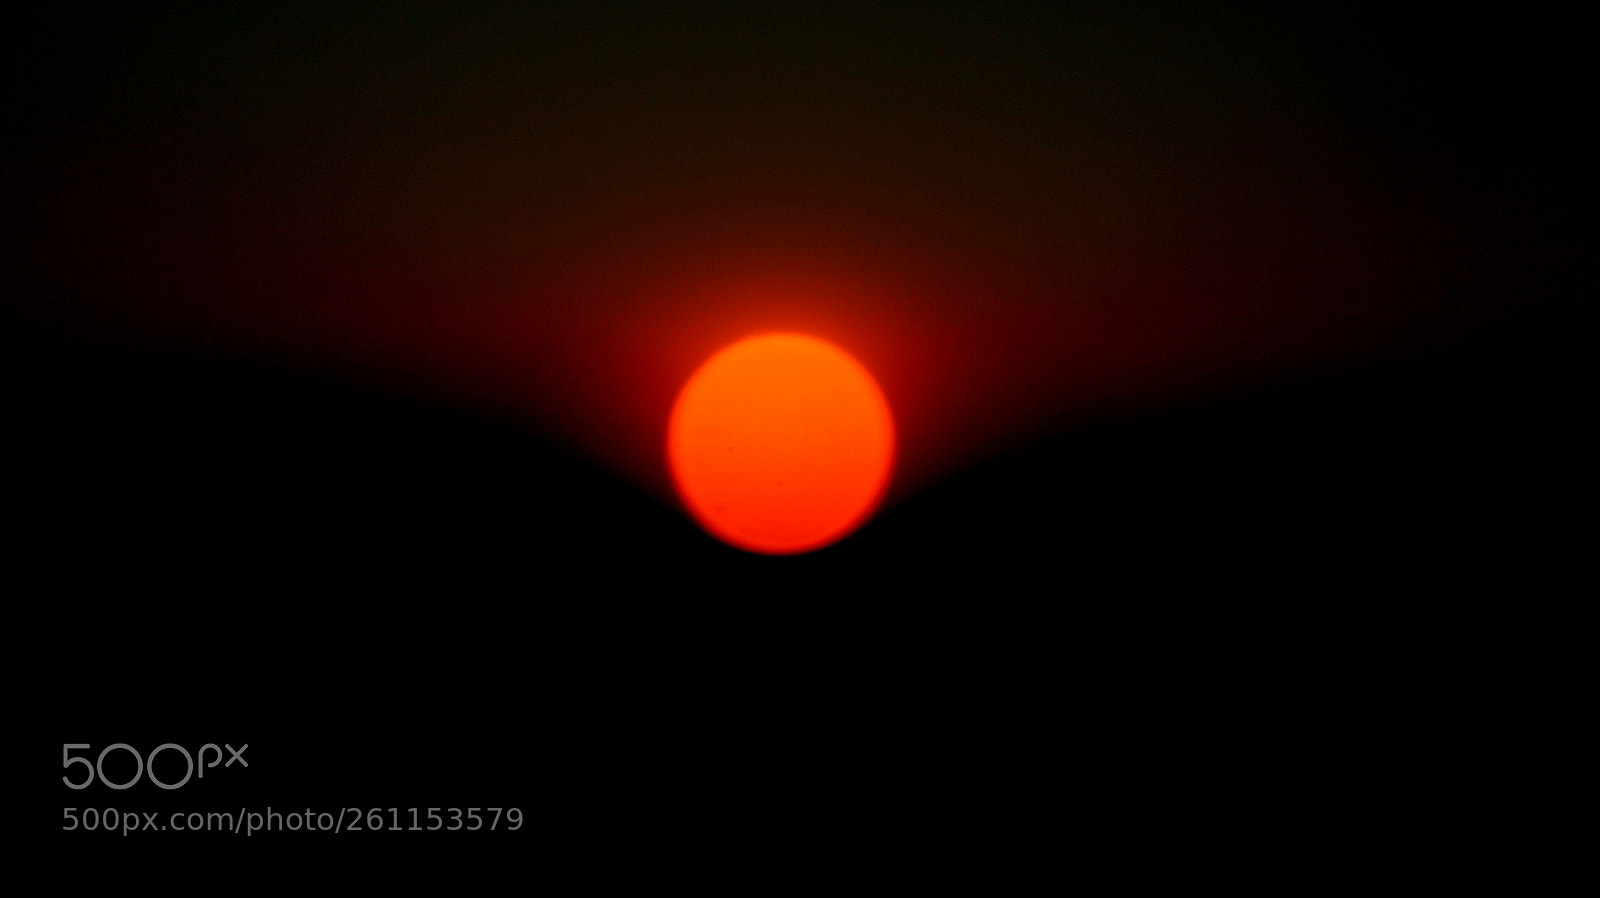 Sony SLT-A58 sample photo. The setting sun photography